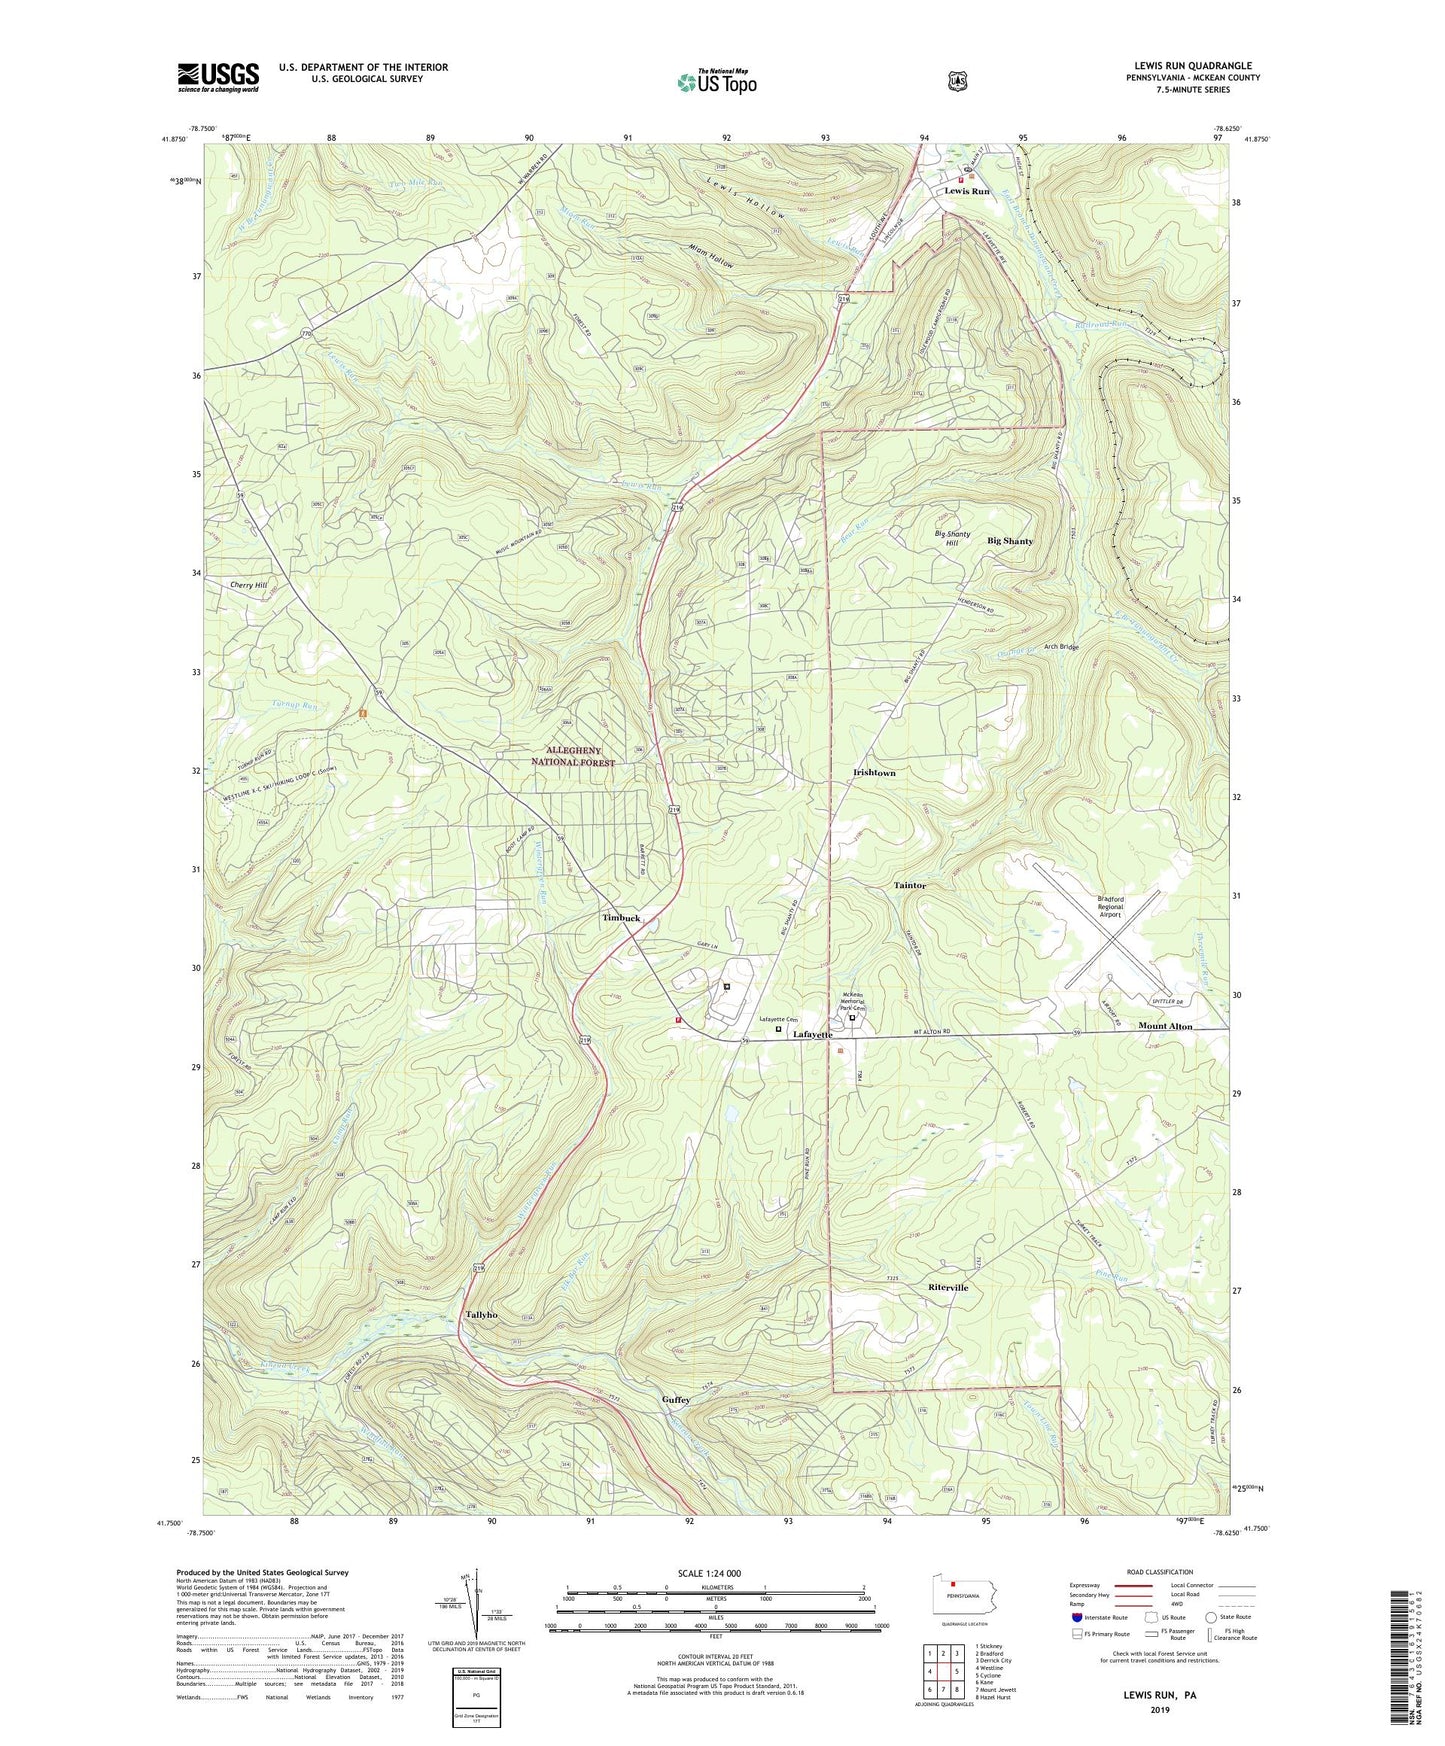 Lewis Run Pennsylvania US Topo Map Image